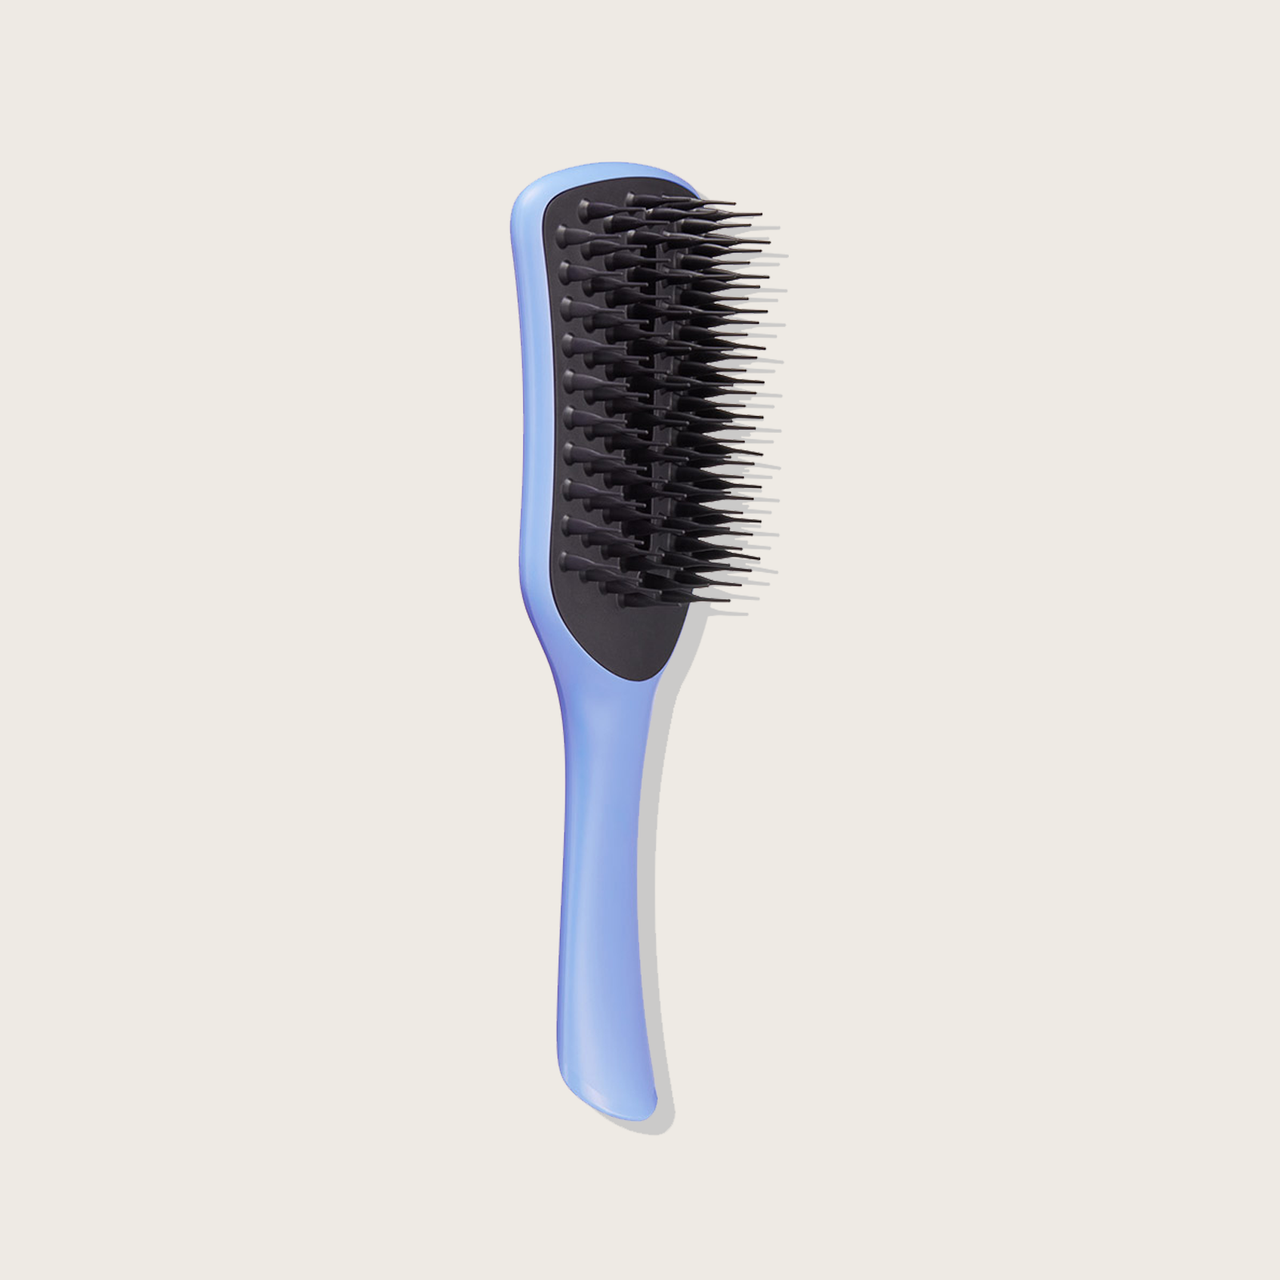 TANGLE TEEZER Ocean blue easy dry & go vented brush 